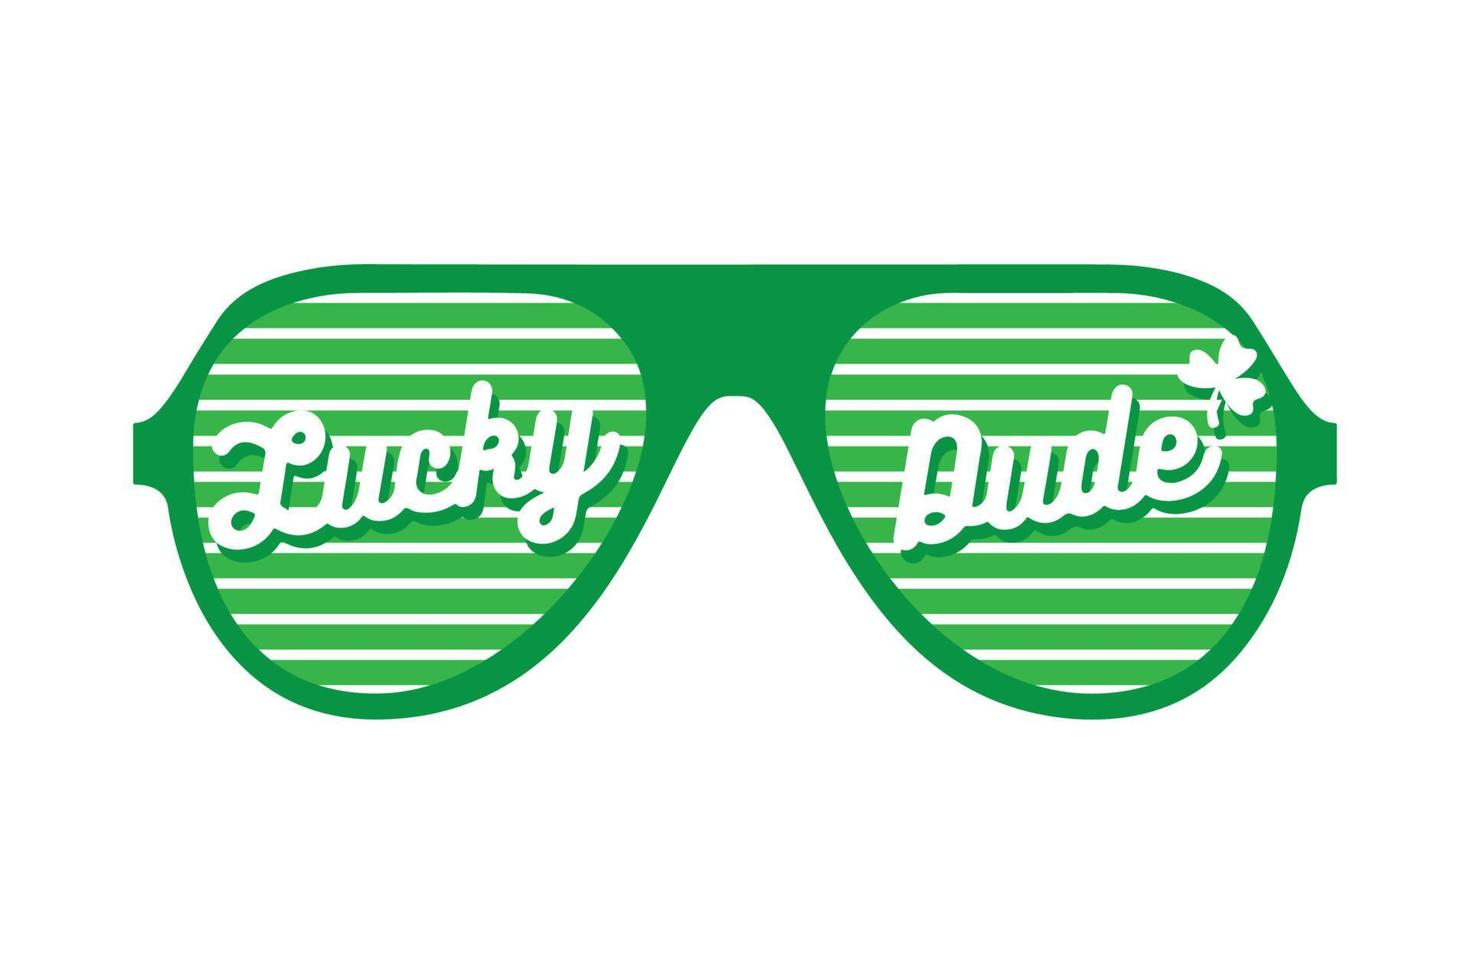 lucky dude solglasögon, st patrick's day, bra för t-shirttryck, affischbanner och presentdesign. vektor